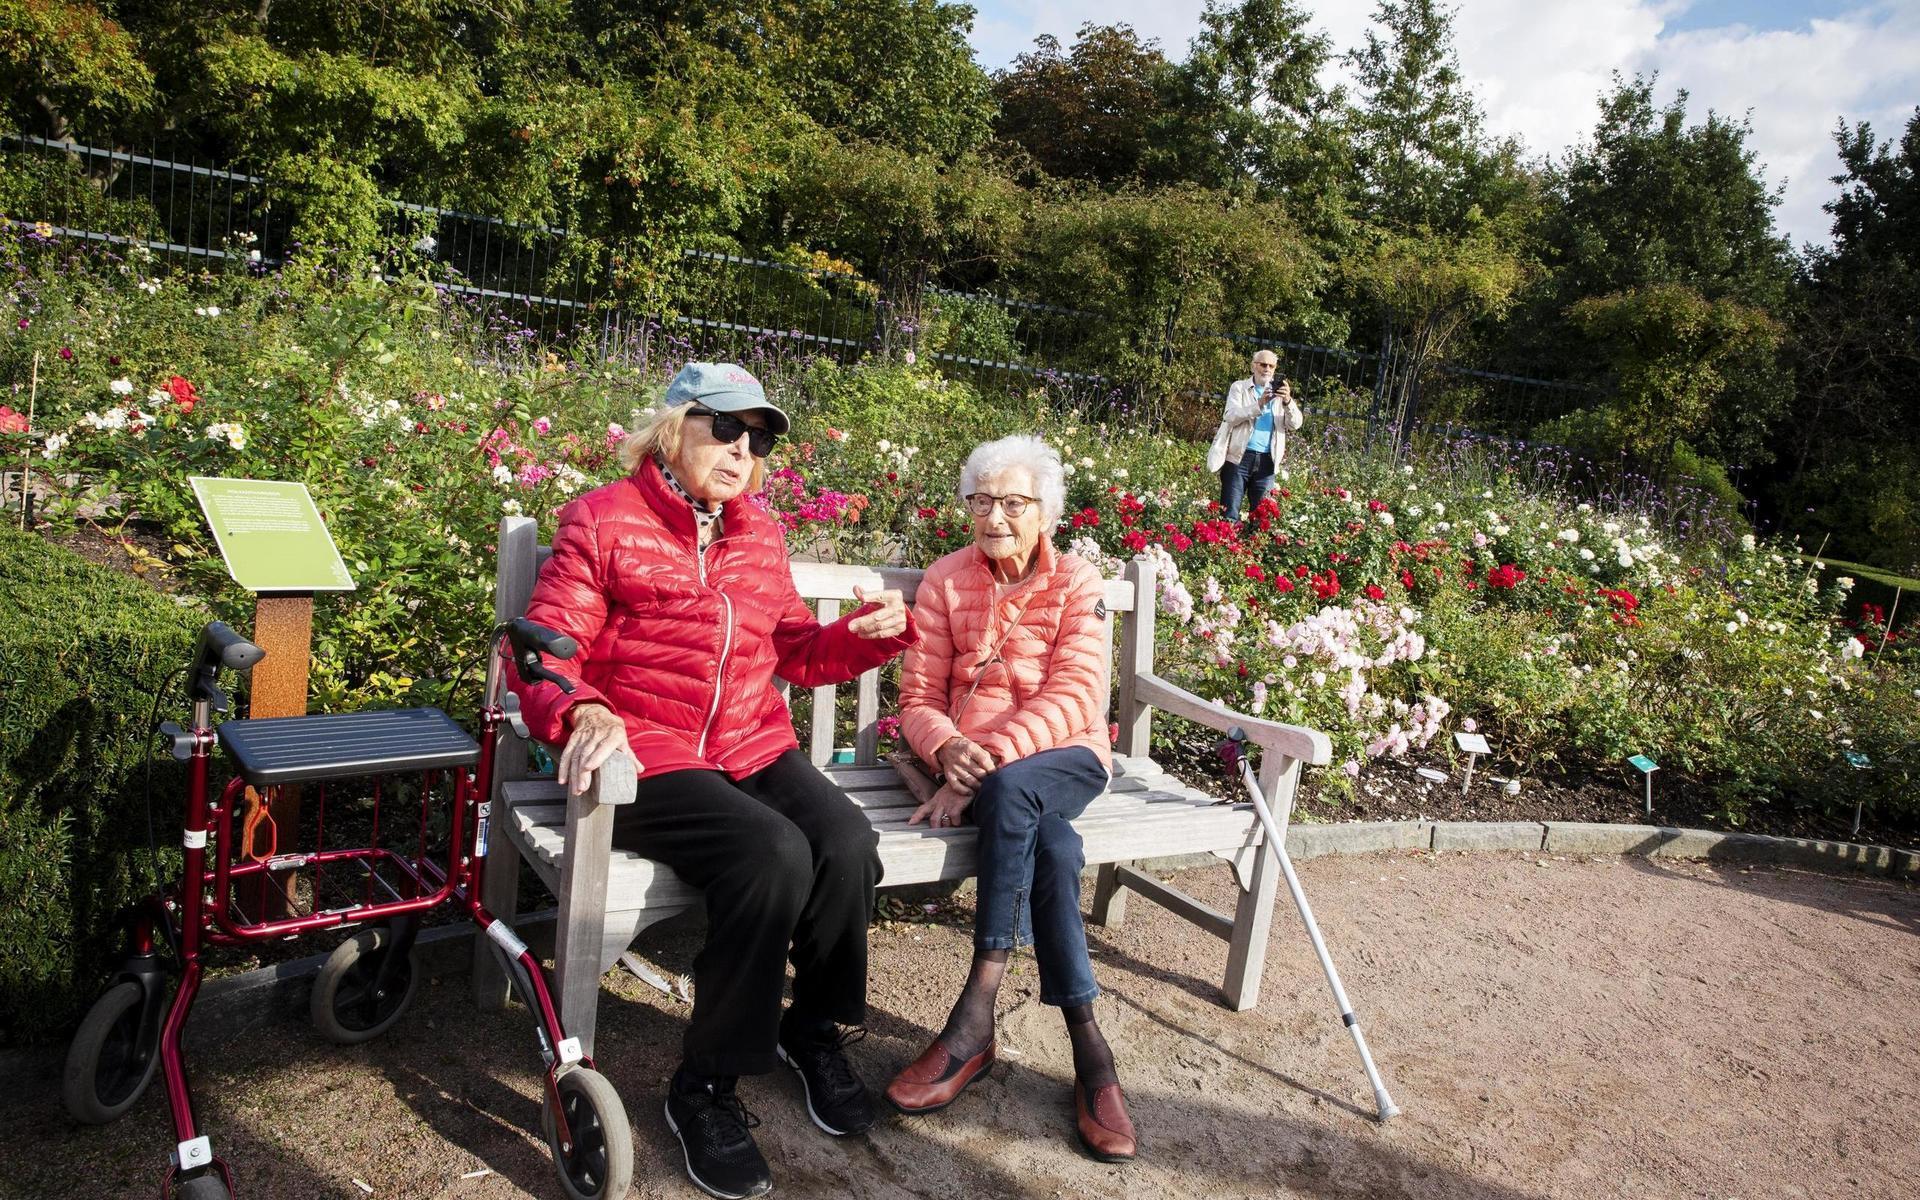 Märta Olsson och Berit Mellberg njuter av solen i rosenträdgården inne i Trädgårdsföreningen. – Det är fantastiskt, det är snart oktober och man kan sitta ute och ha det skönt. Vi brukar gå hit och sätta oss, säger Märta Olsson.